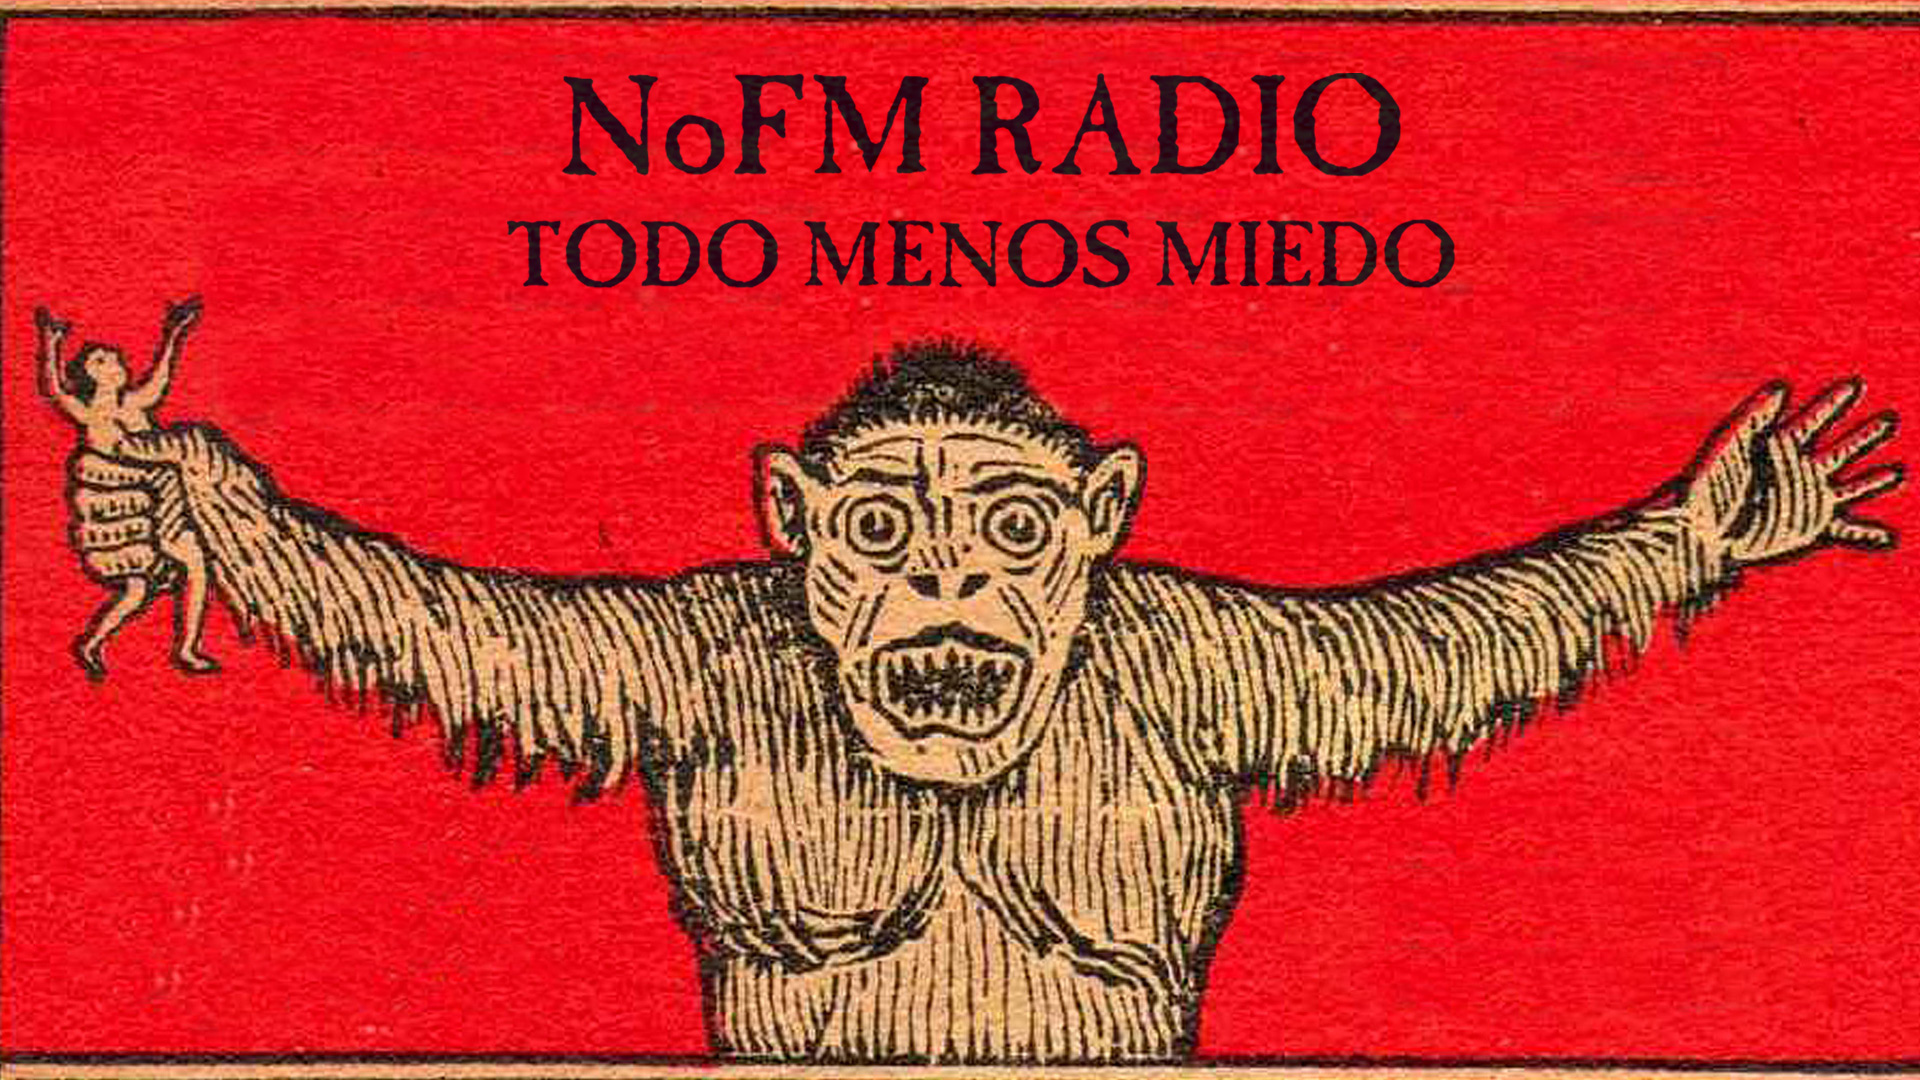 (c) Nofm-radio.com